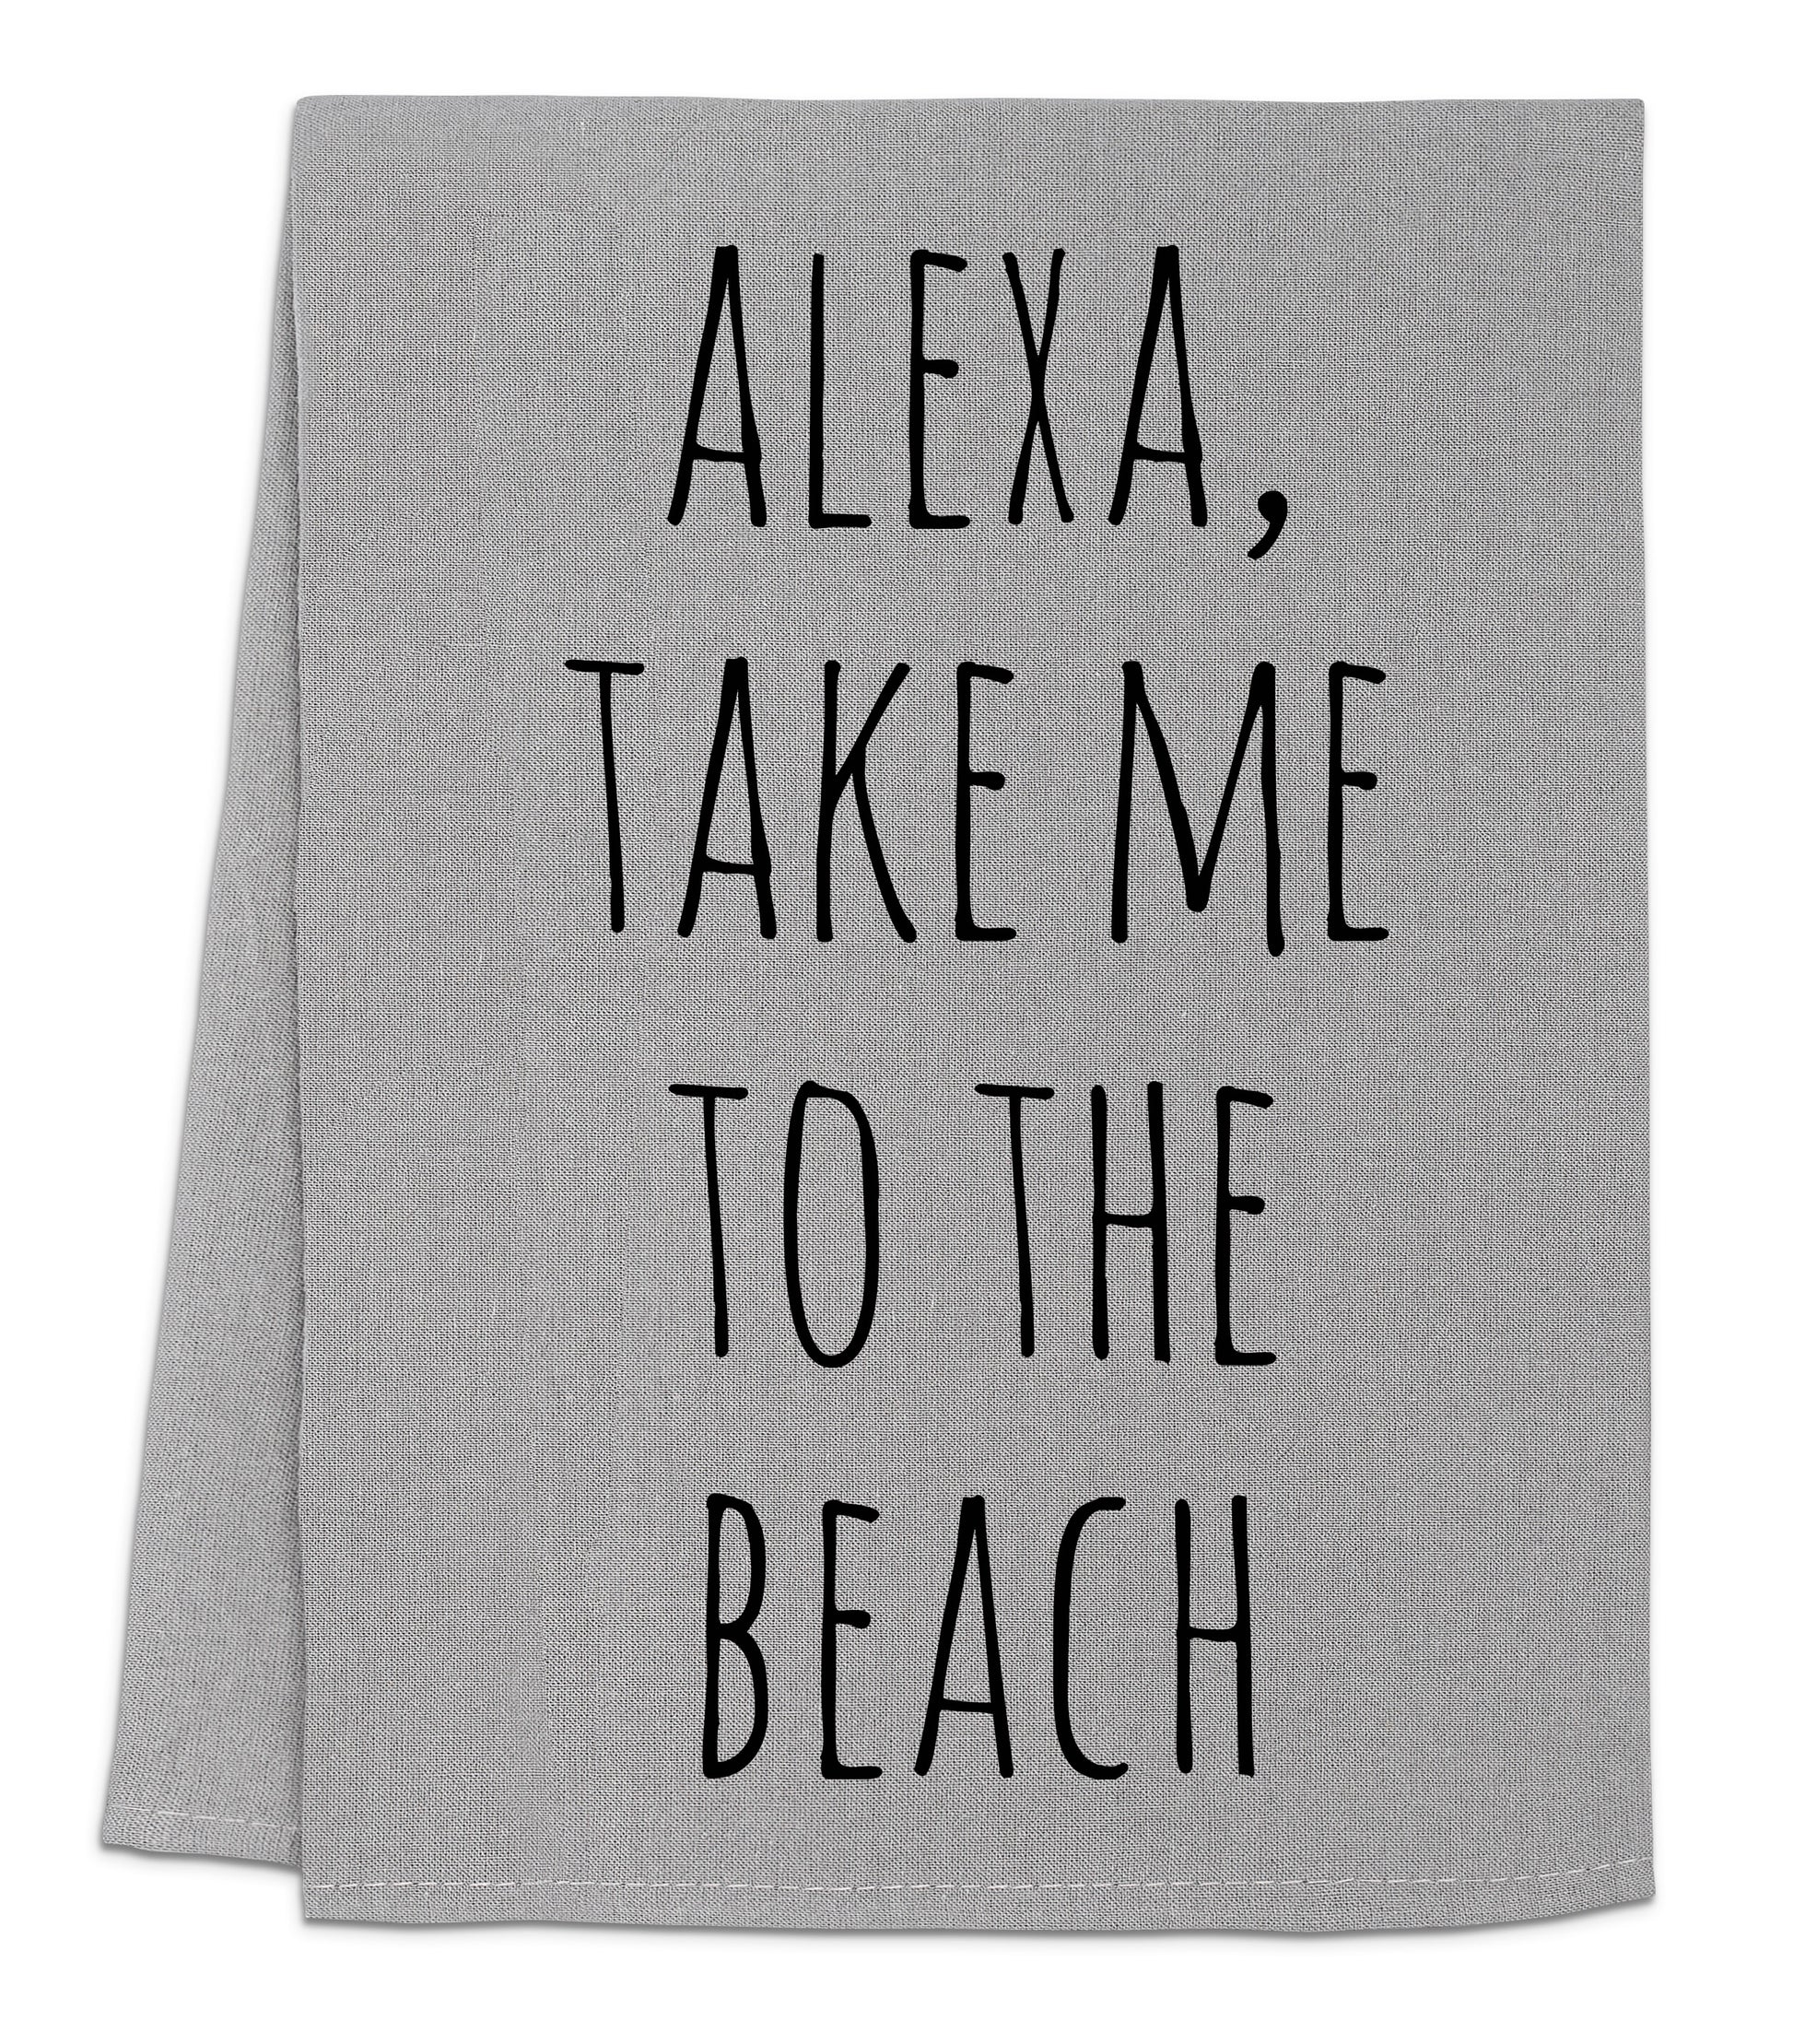 a towel that says, alexa take me to the beach